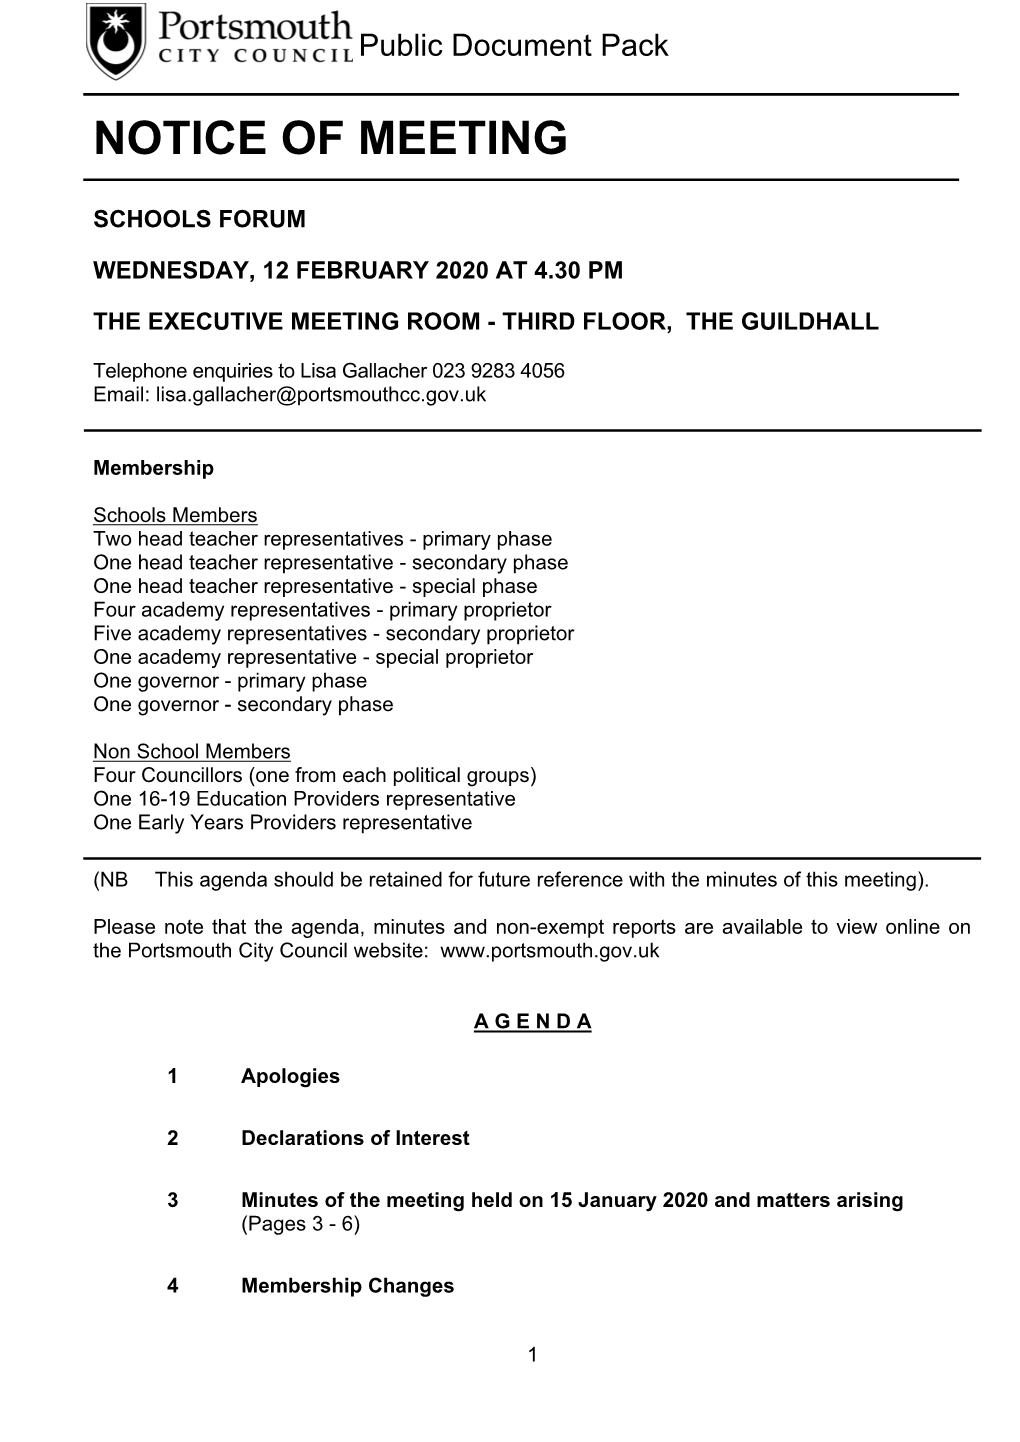 (Public Pack)Agenda Document for Schools Forum, 12/02/2020 16:30